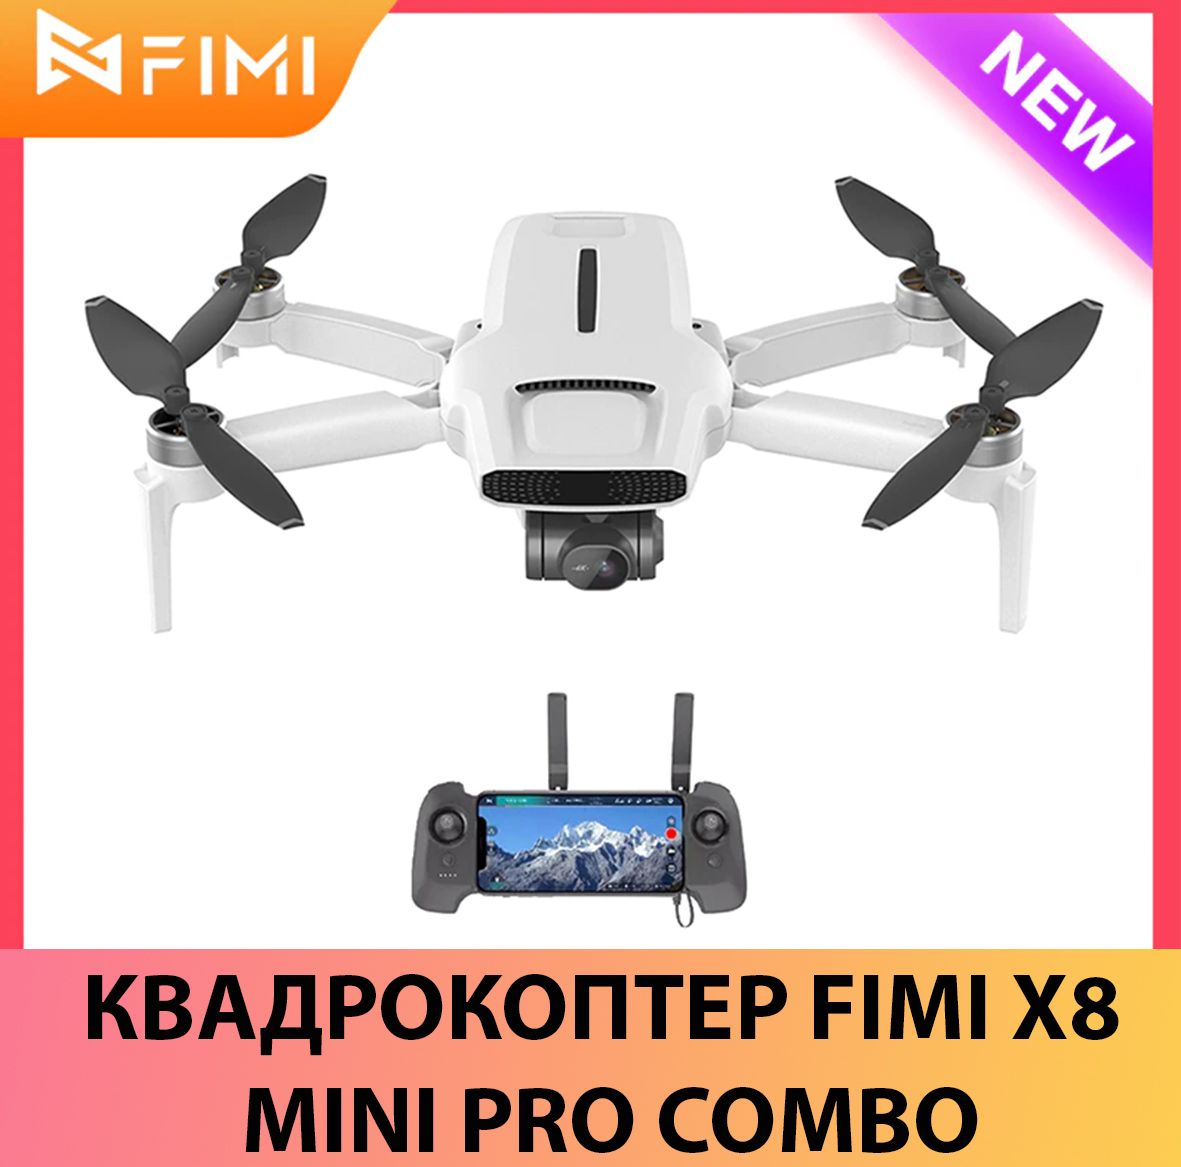 Квадрокоптер Fimi x8. Квадрокоптер фими мини. Fimi x8 Pro. Видеообзор квадрокоптер Fimi x8 Mini Pro v2 Combo. Fimi x8 mini купить